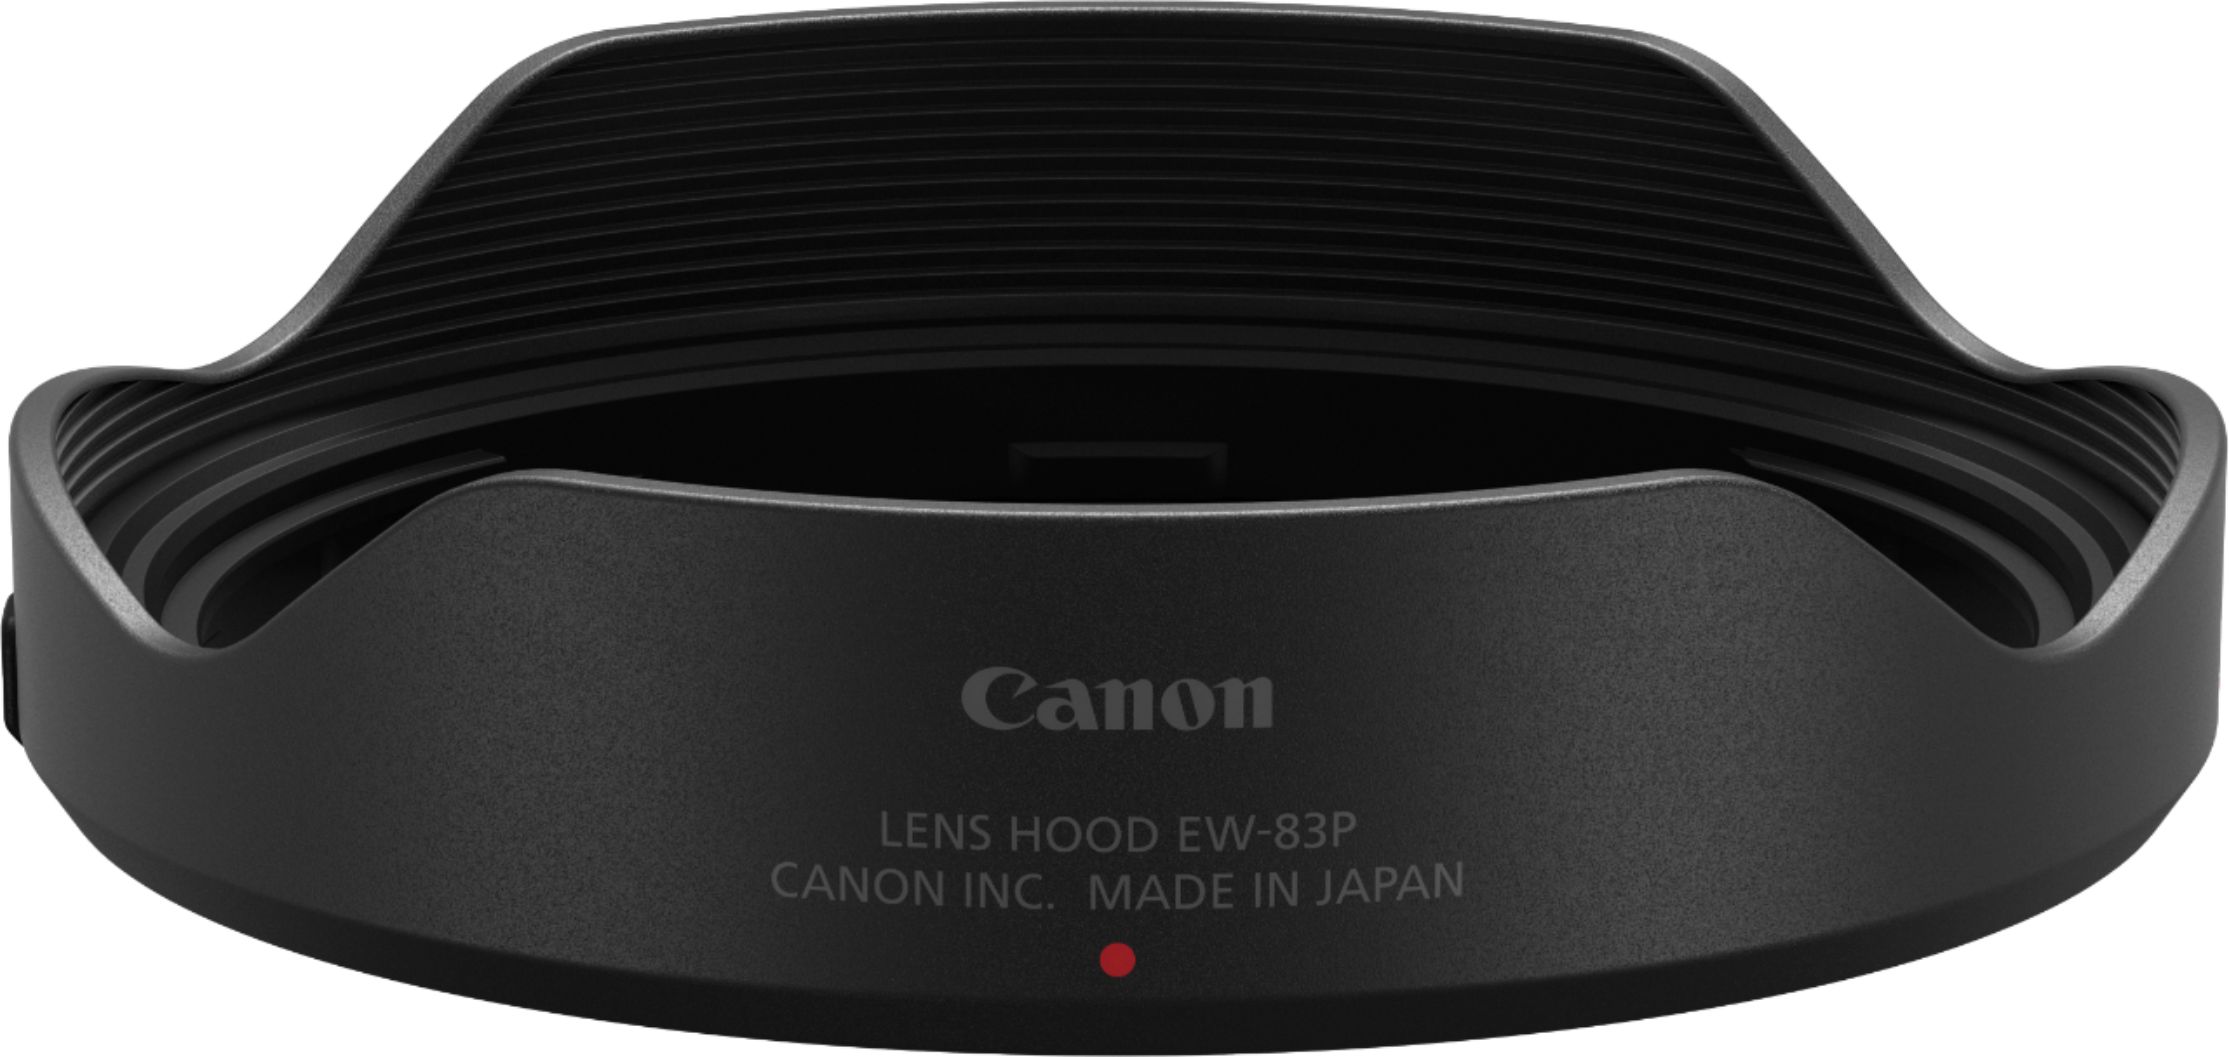 Canon - EW-83P Lens Hood for RF 14-35mm f/4 L IS USM Lens - Black